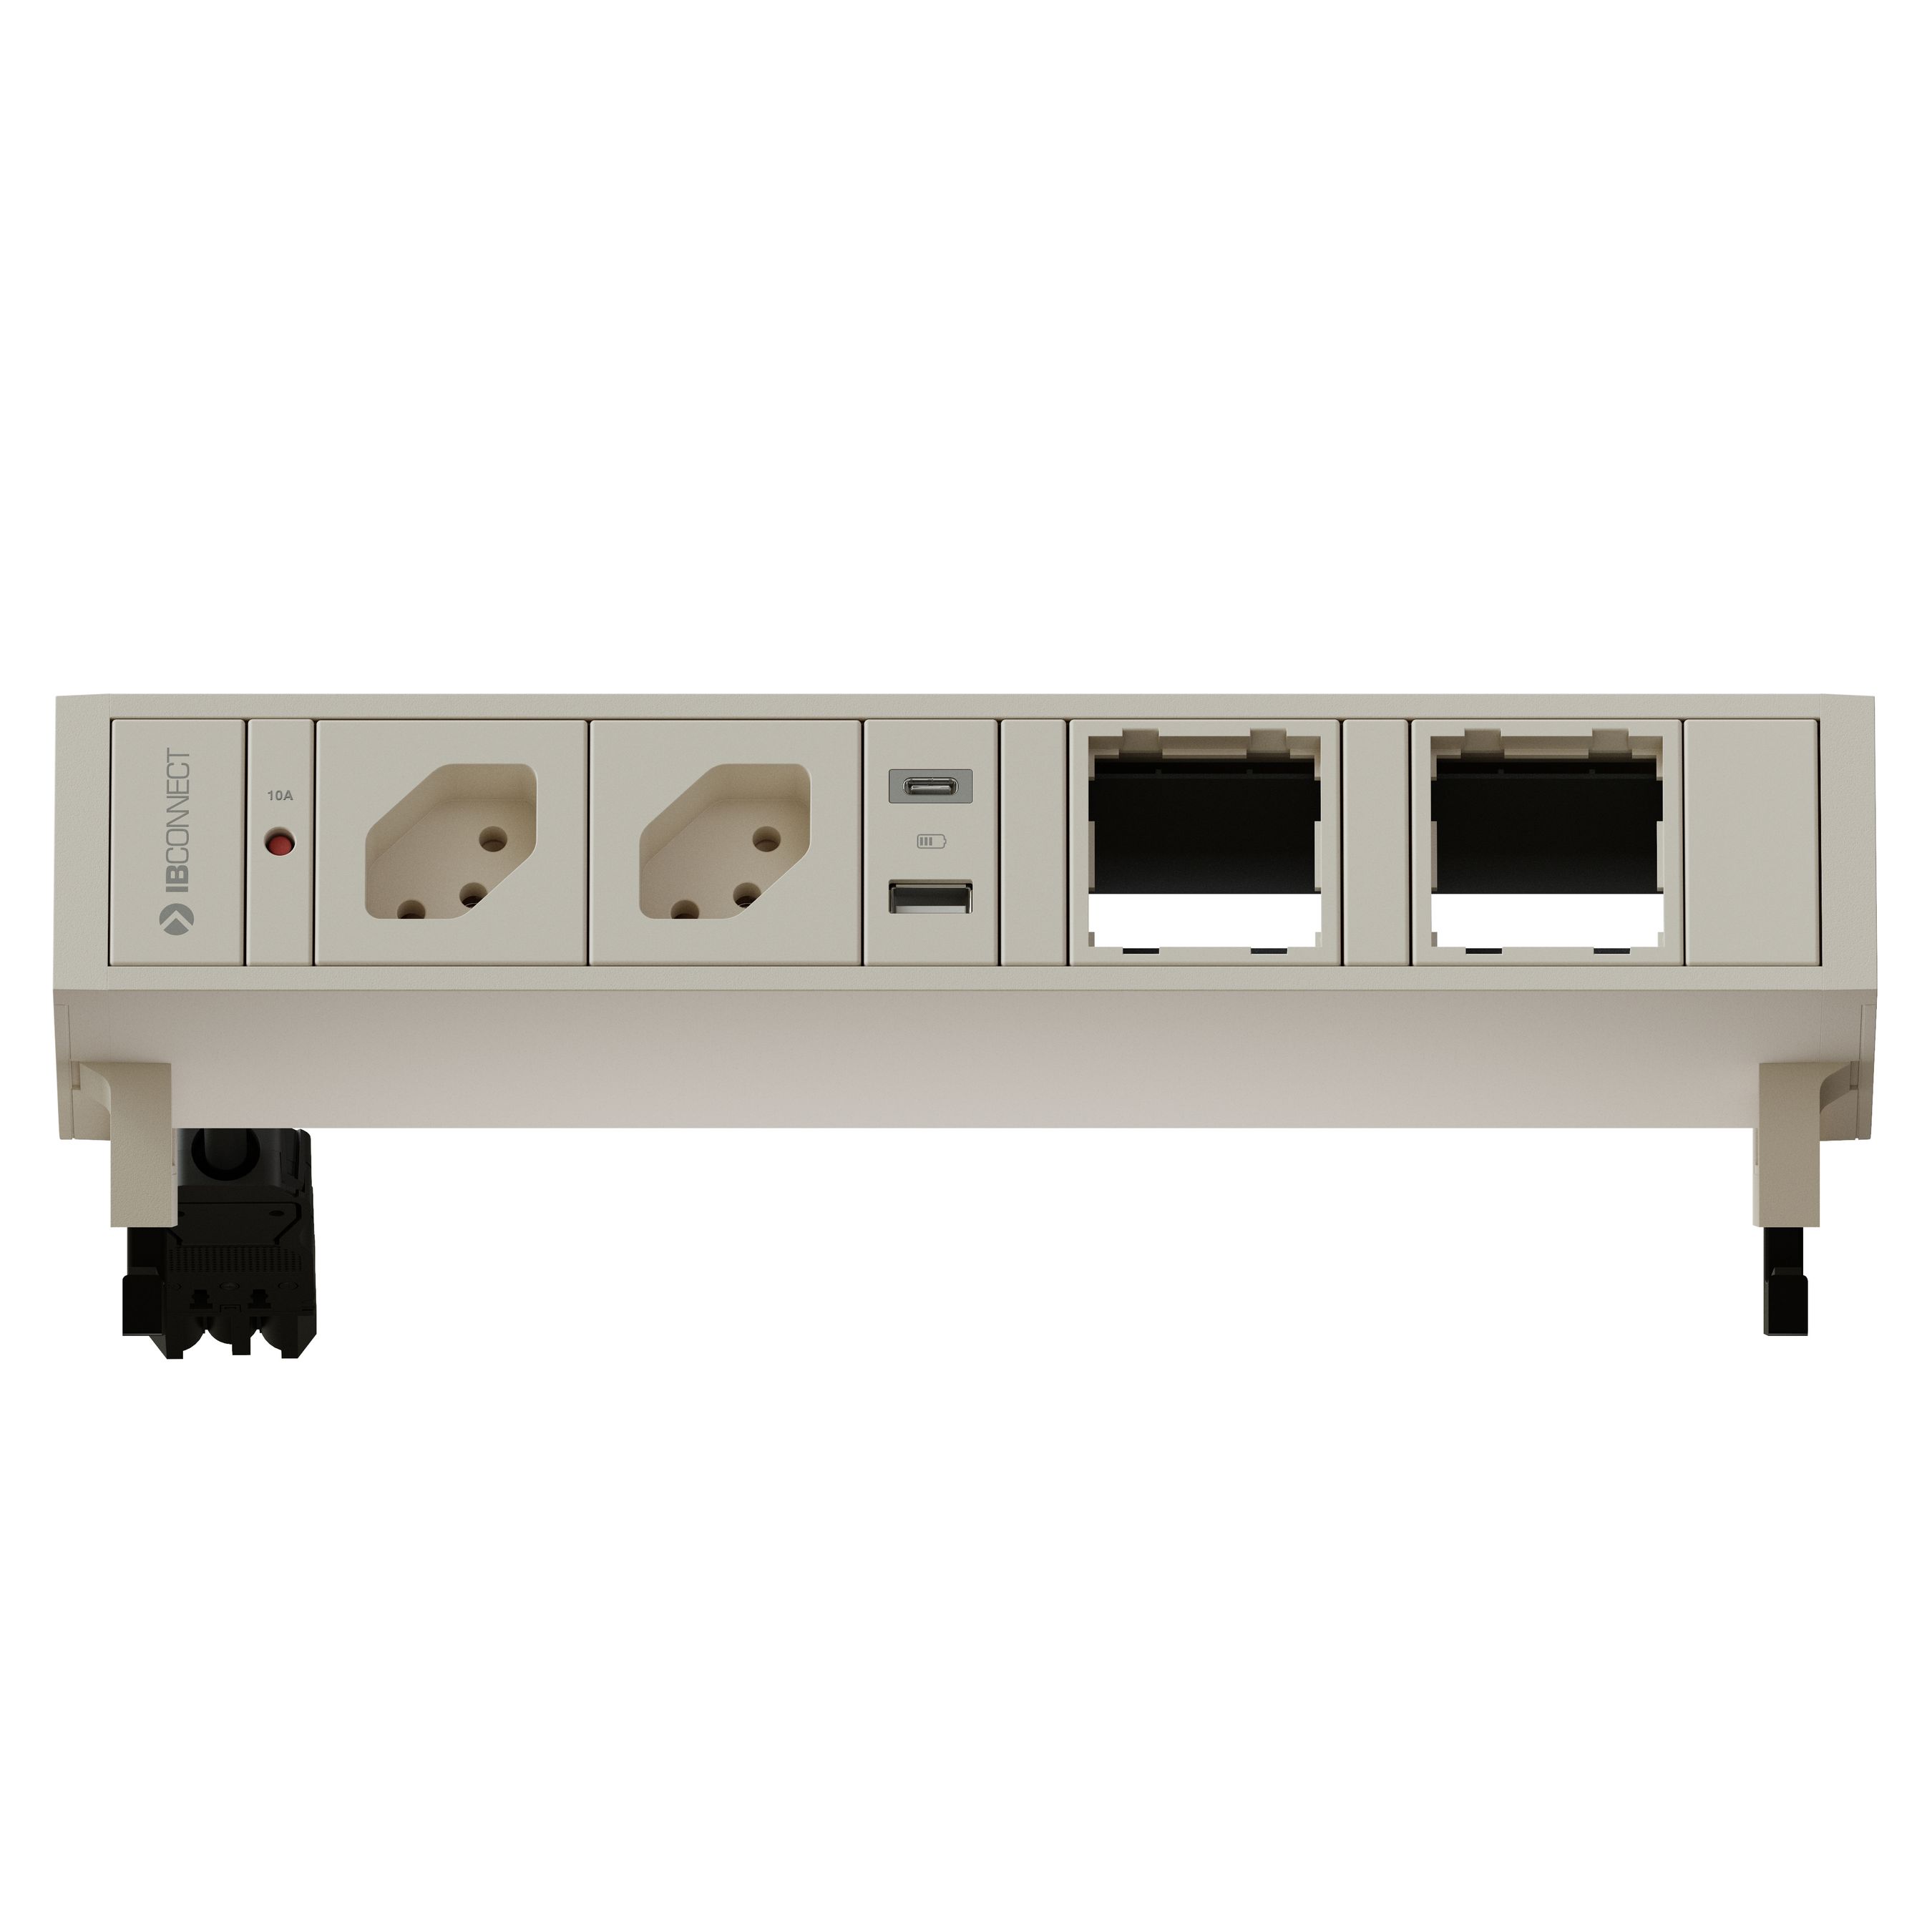 SUPRA presa multipla bianco 2x tipo 13 1x USB-A/C 2x modulo vuoto